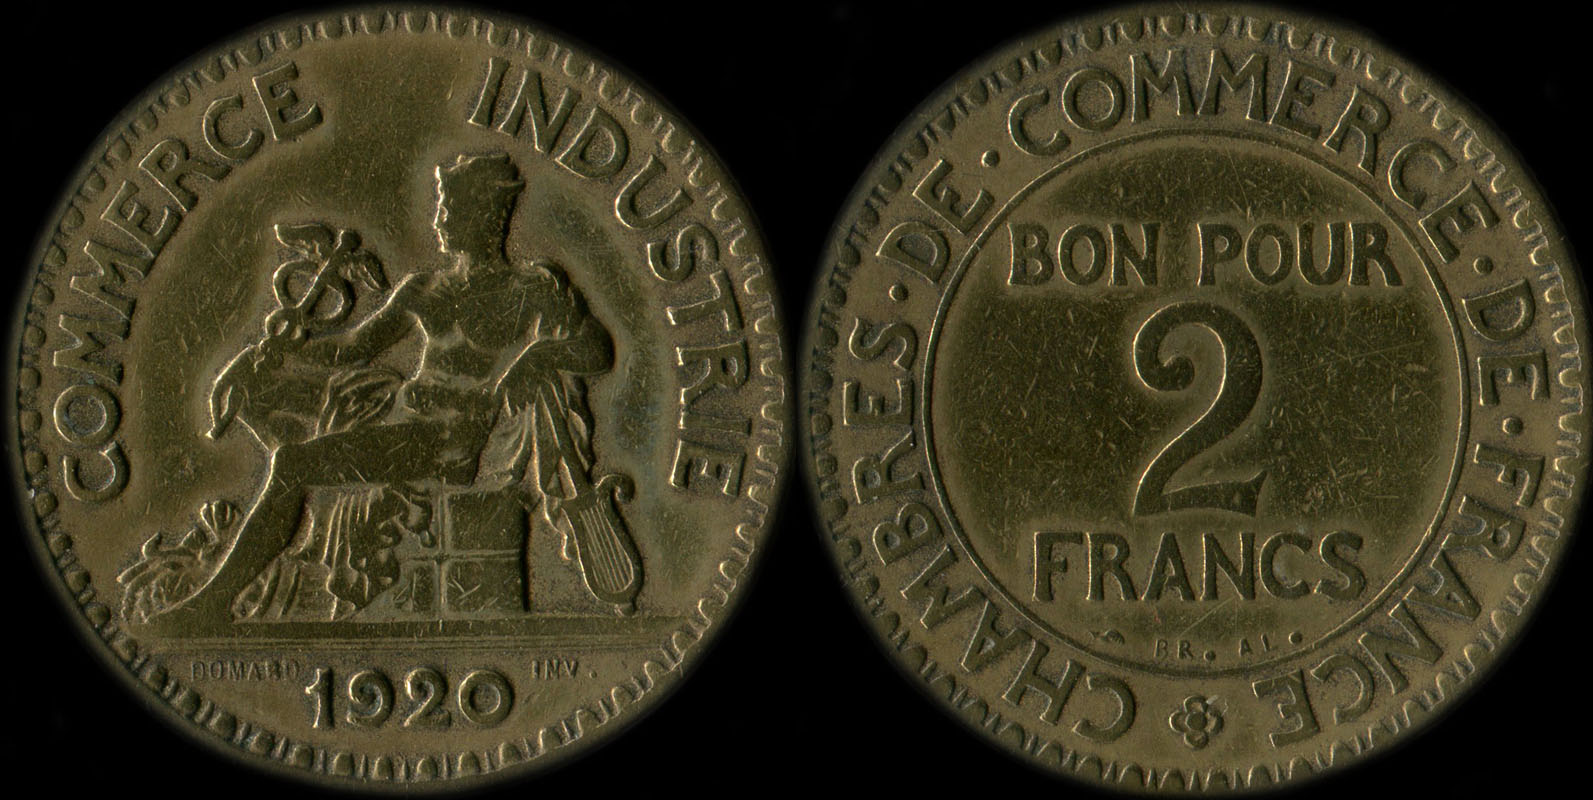 Pice de 2 francs 1920 variante avec 2 ouvert